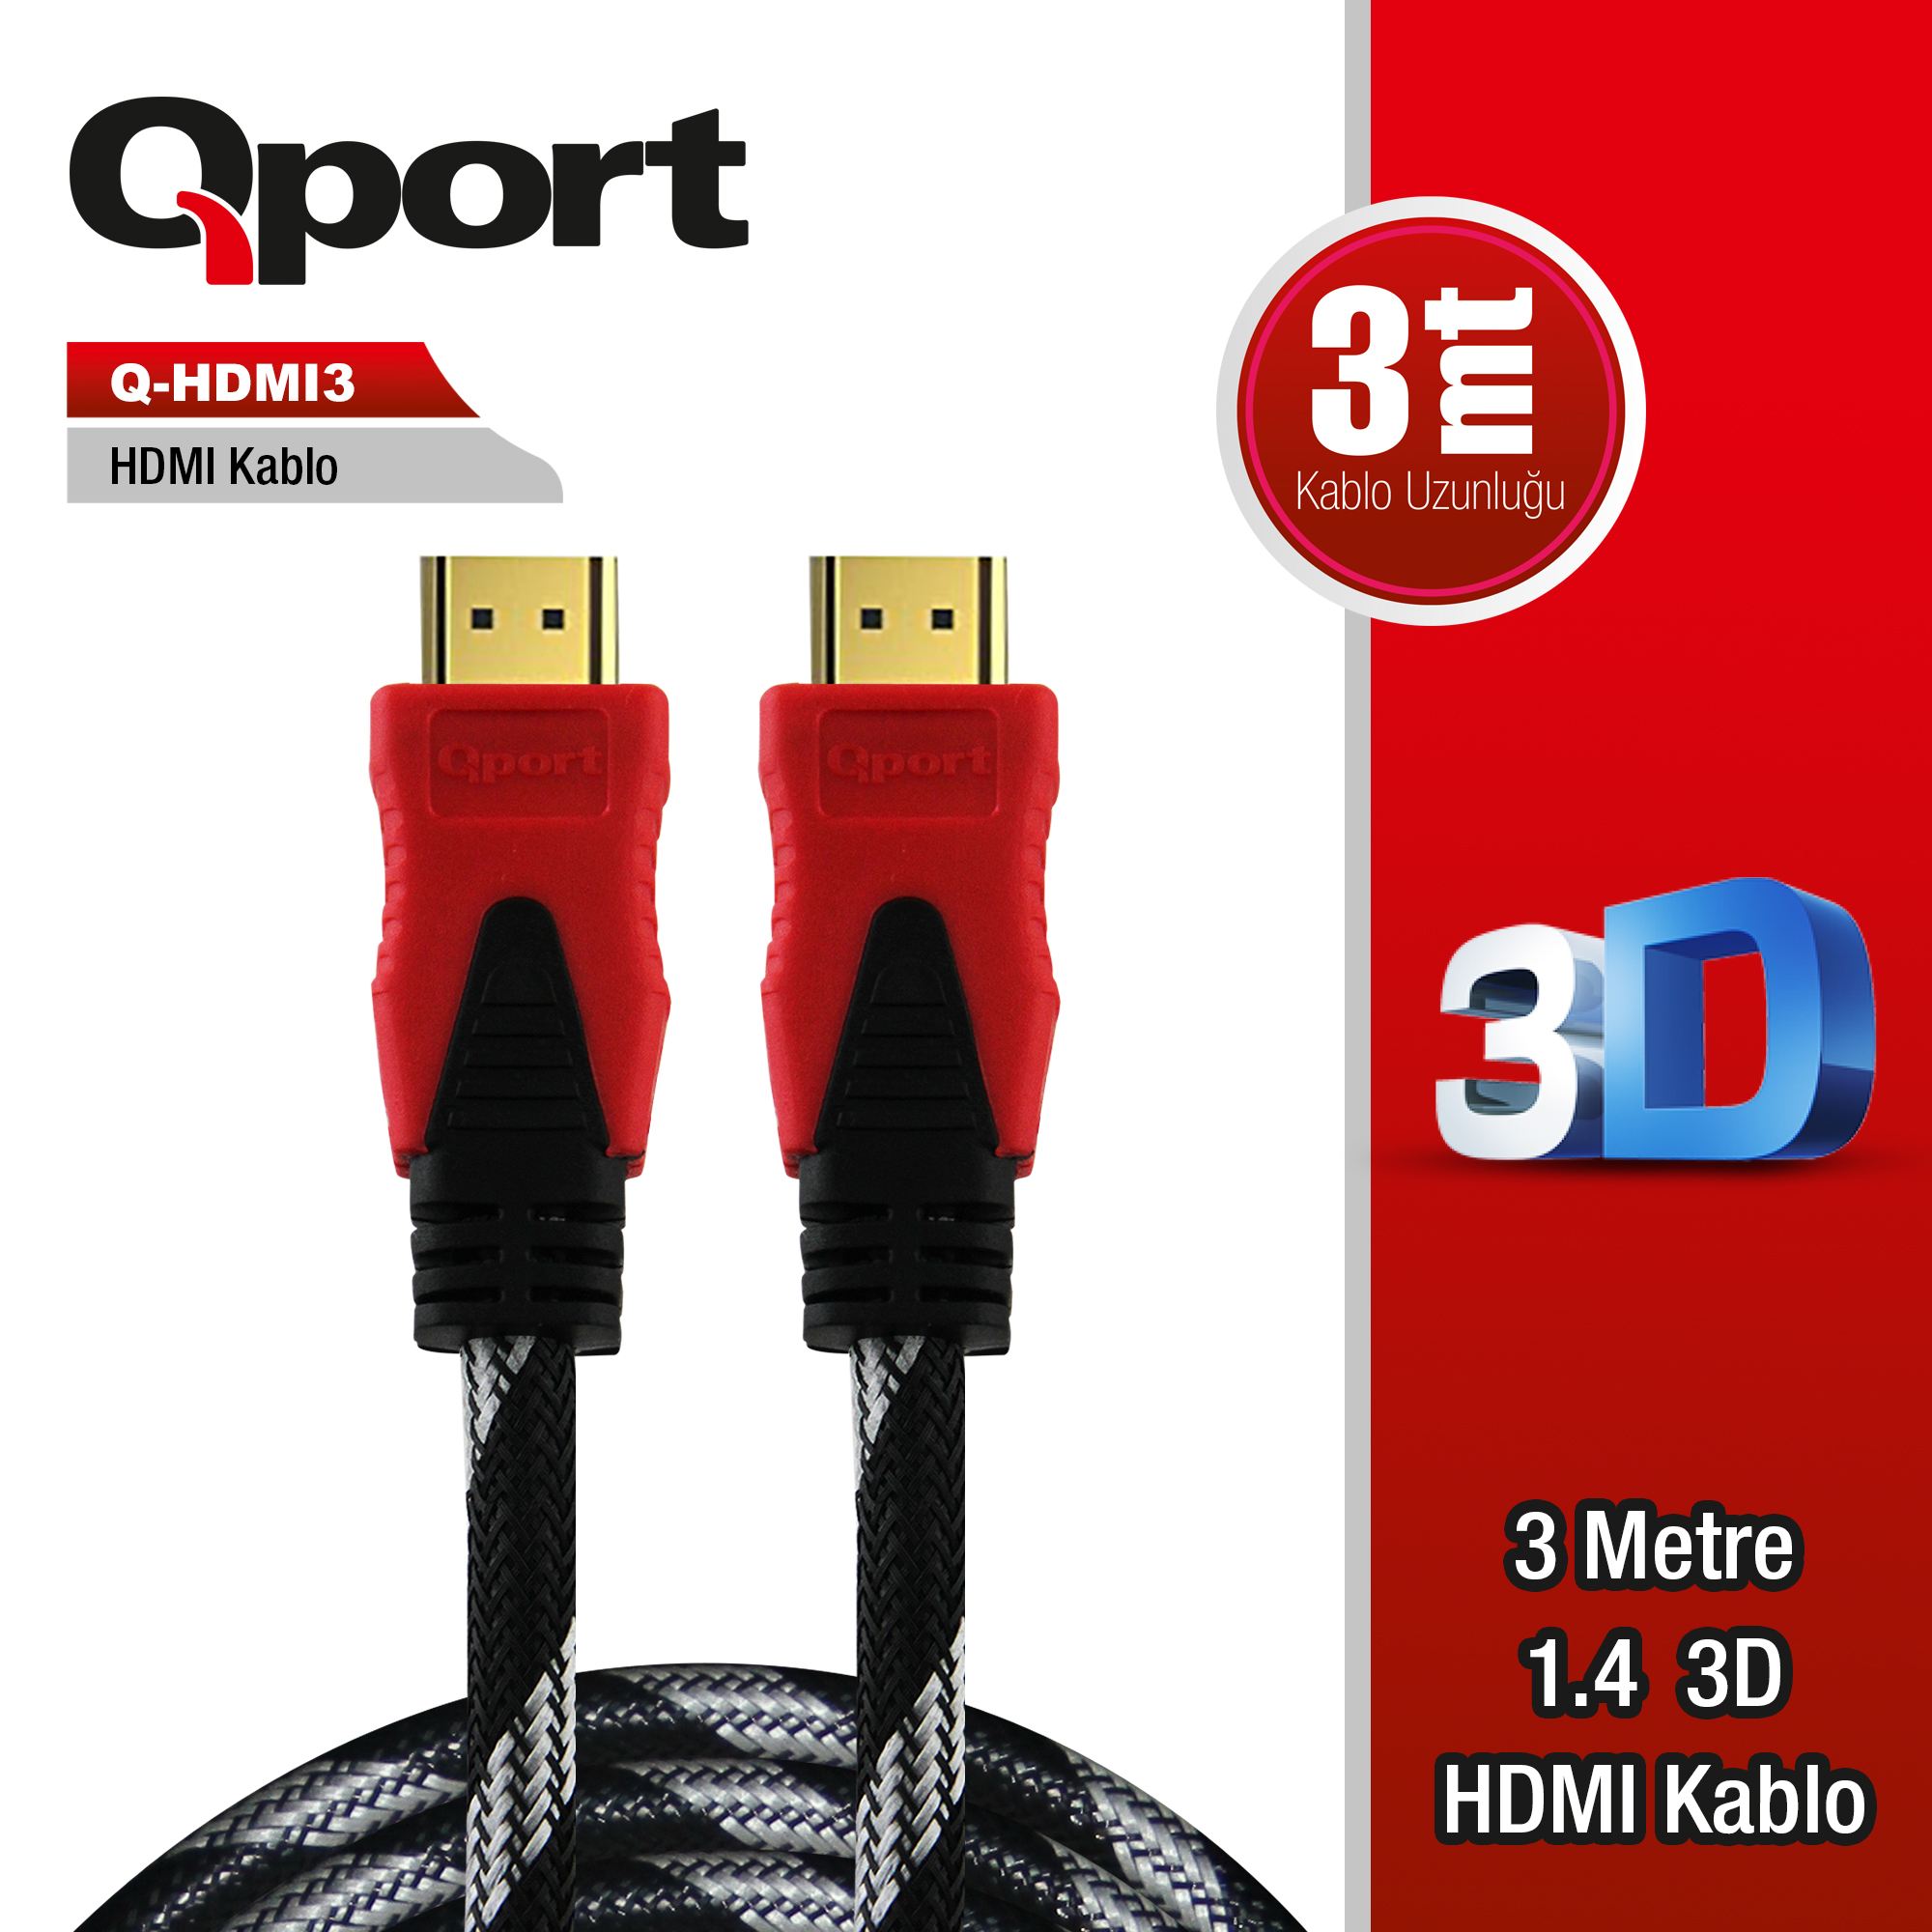 QPORT Q-HDMI3 HDMI KABLO 3MT Ver1.4 ALTIN UÇLU 3D